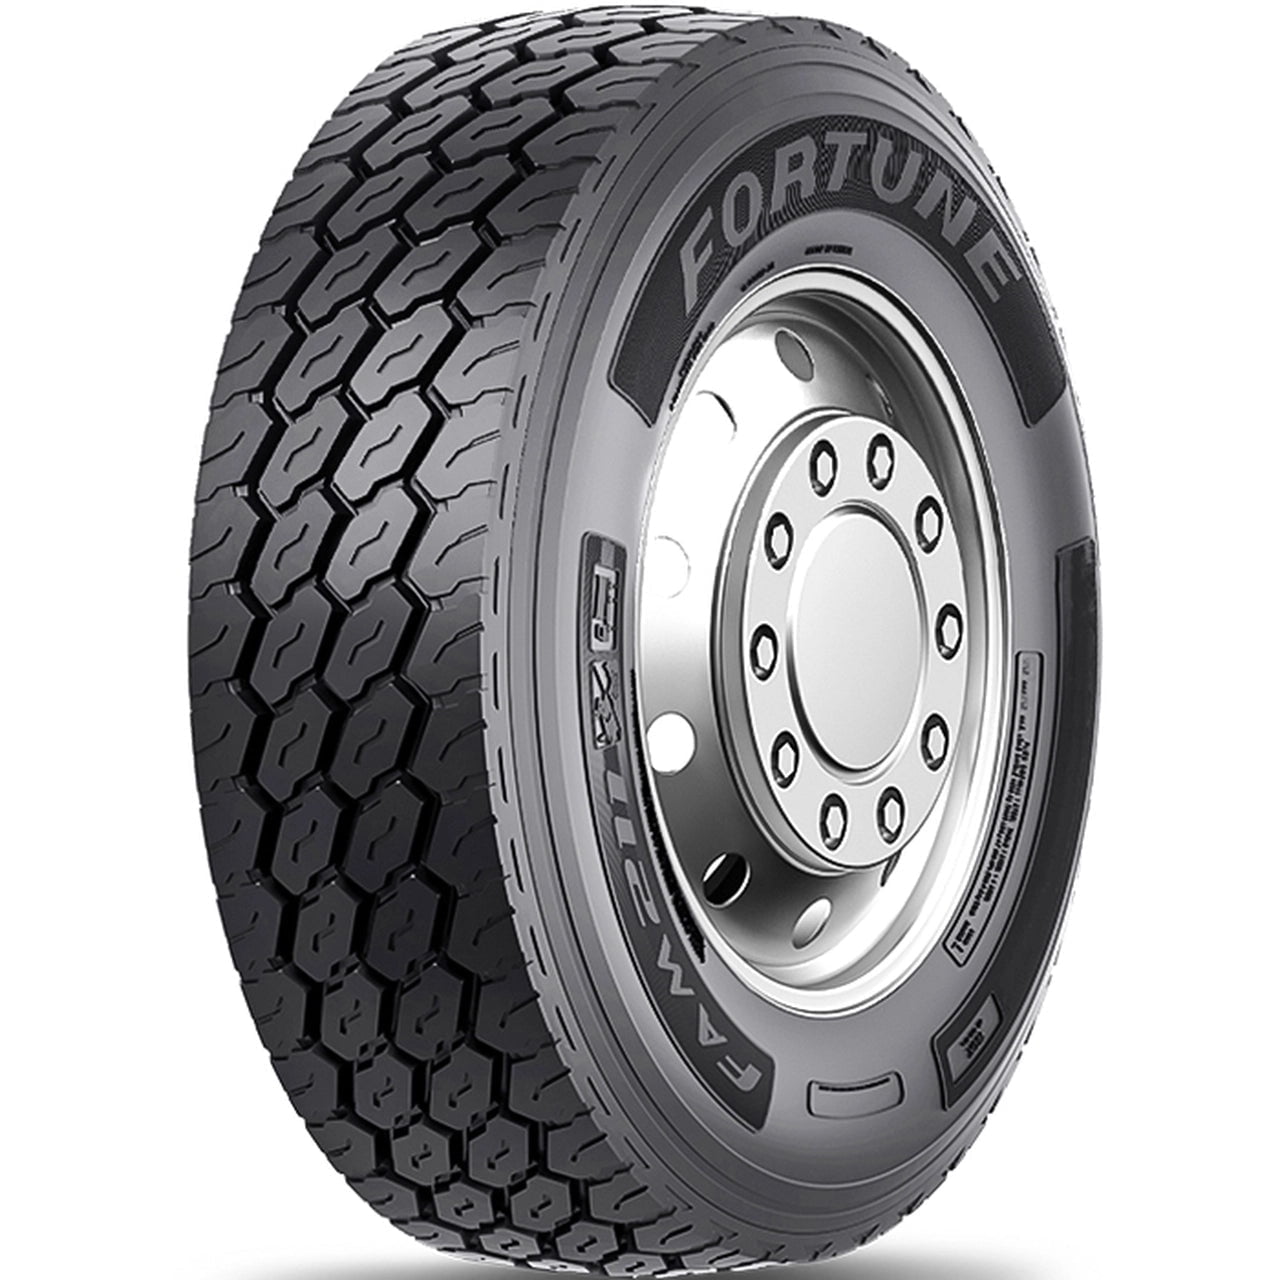 ST225/90D16 Advance Premium Hiway LT Commercial Truck Tire 